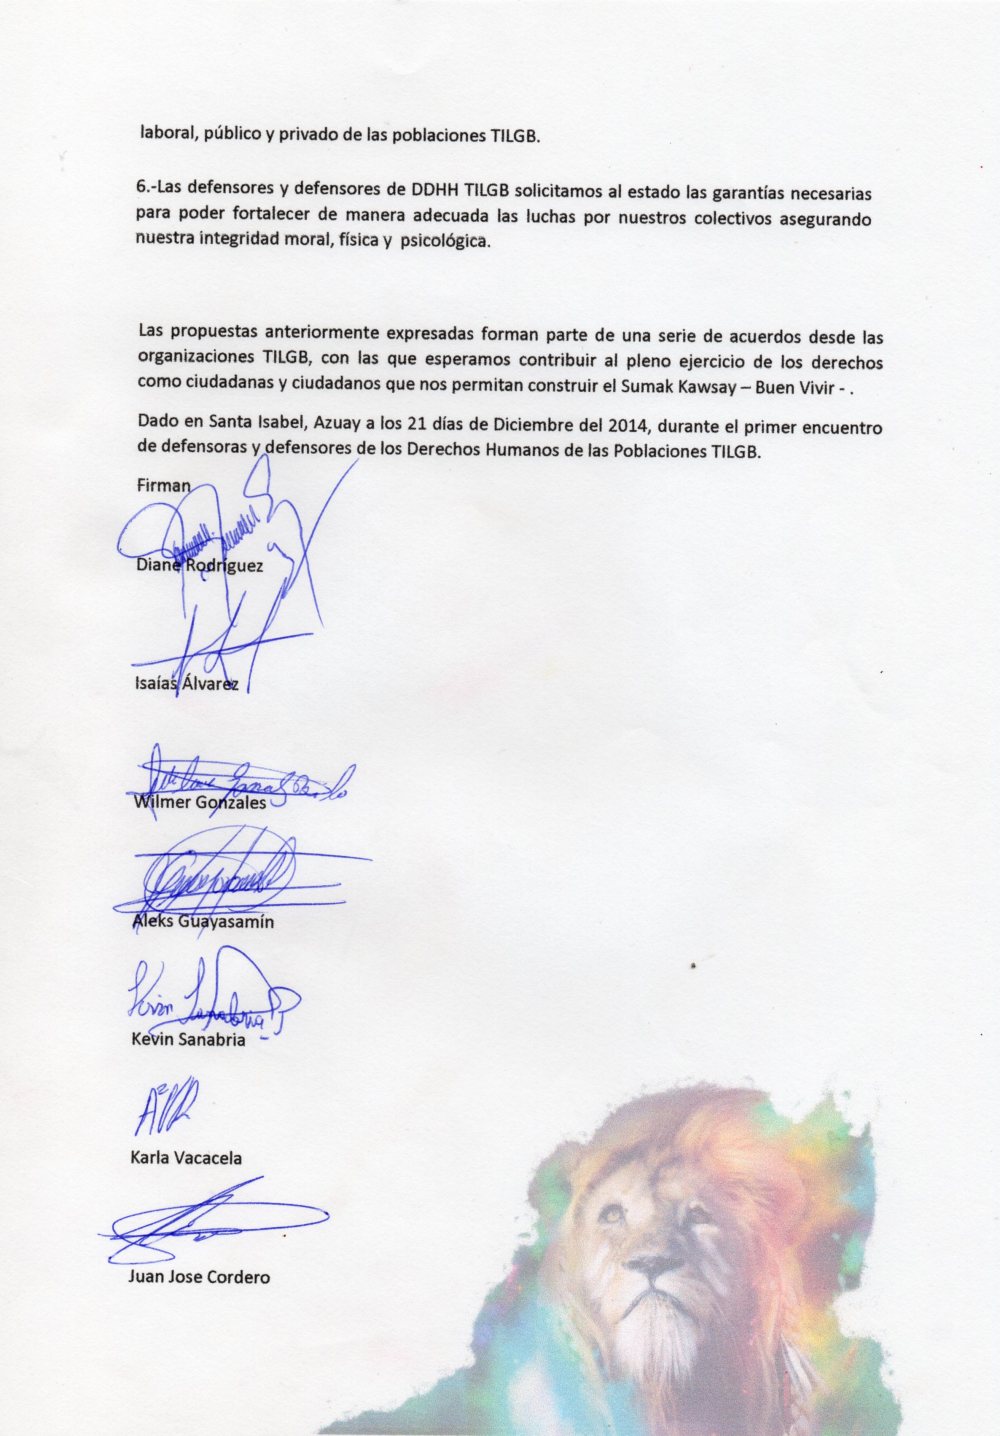 Manifiesto de los y las defensores y defensoras de derechos humanos TILGB LGBT, capitulo Yungilla, Cuenca, Ecuador realizado por la Asociación Silueta X 2